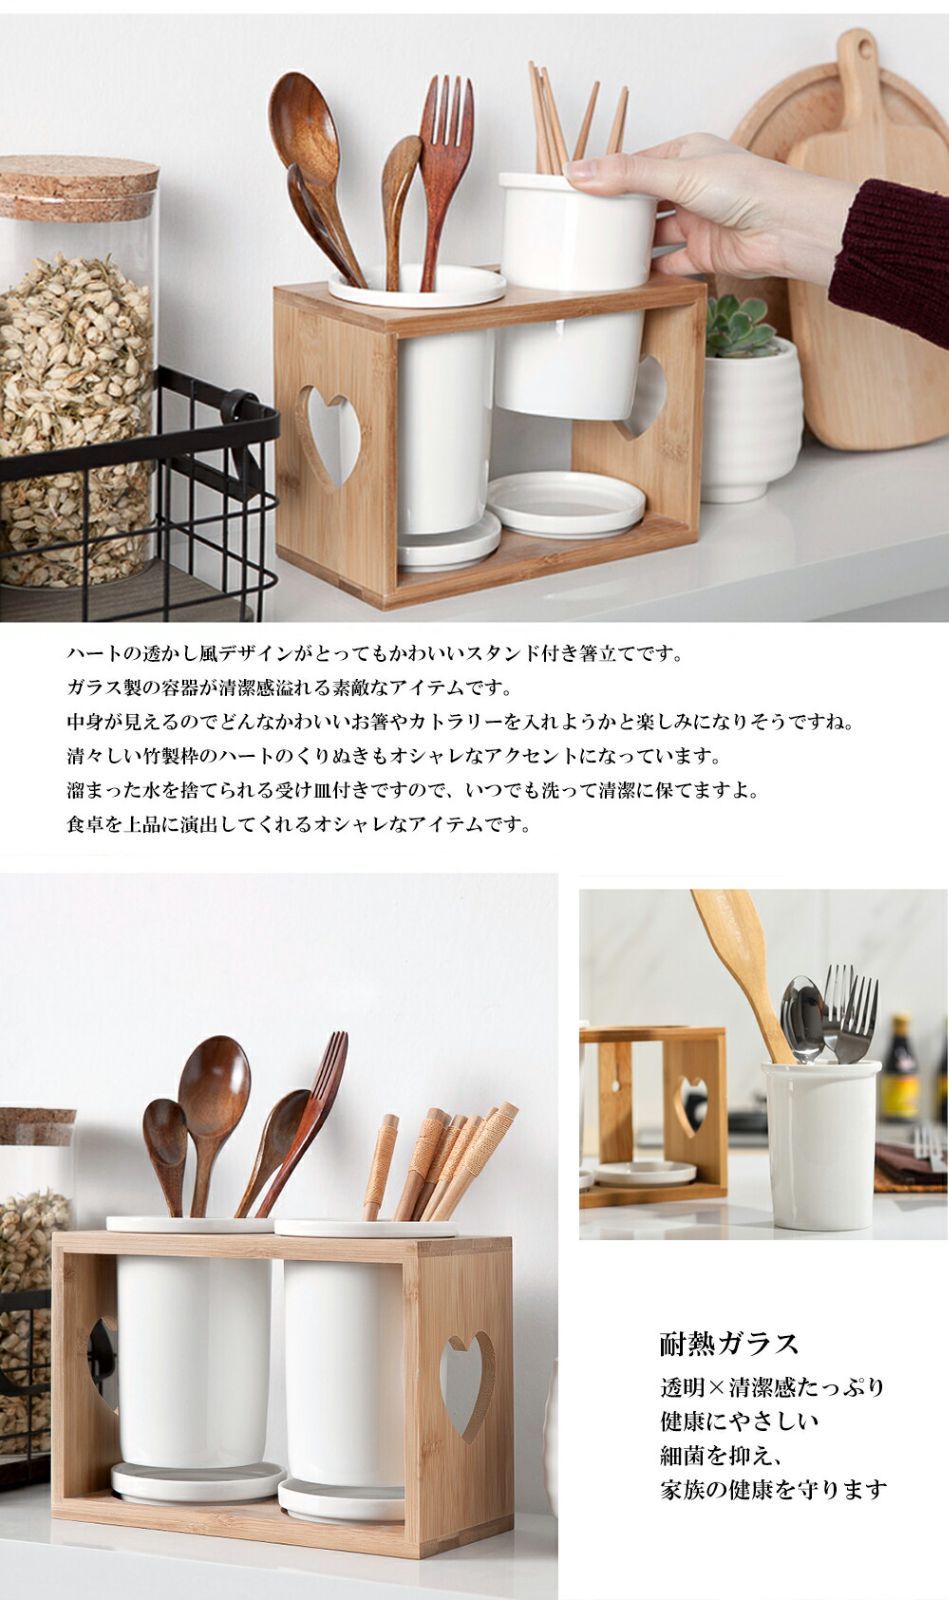 DISUKA] 水切り 箸立て カトラリースタンド 箸入れ キッチンツール